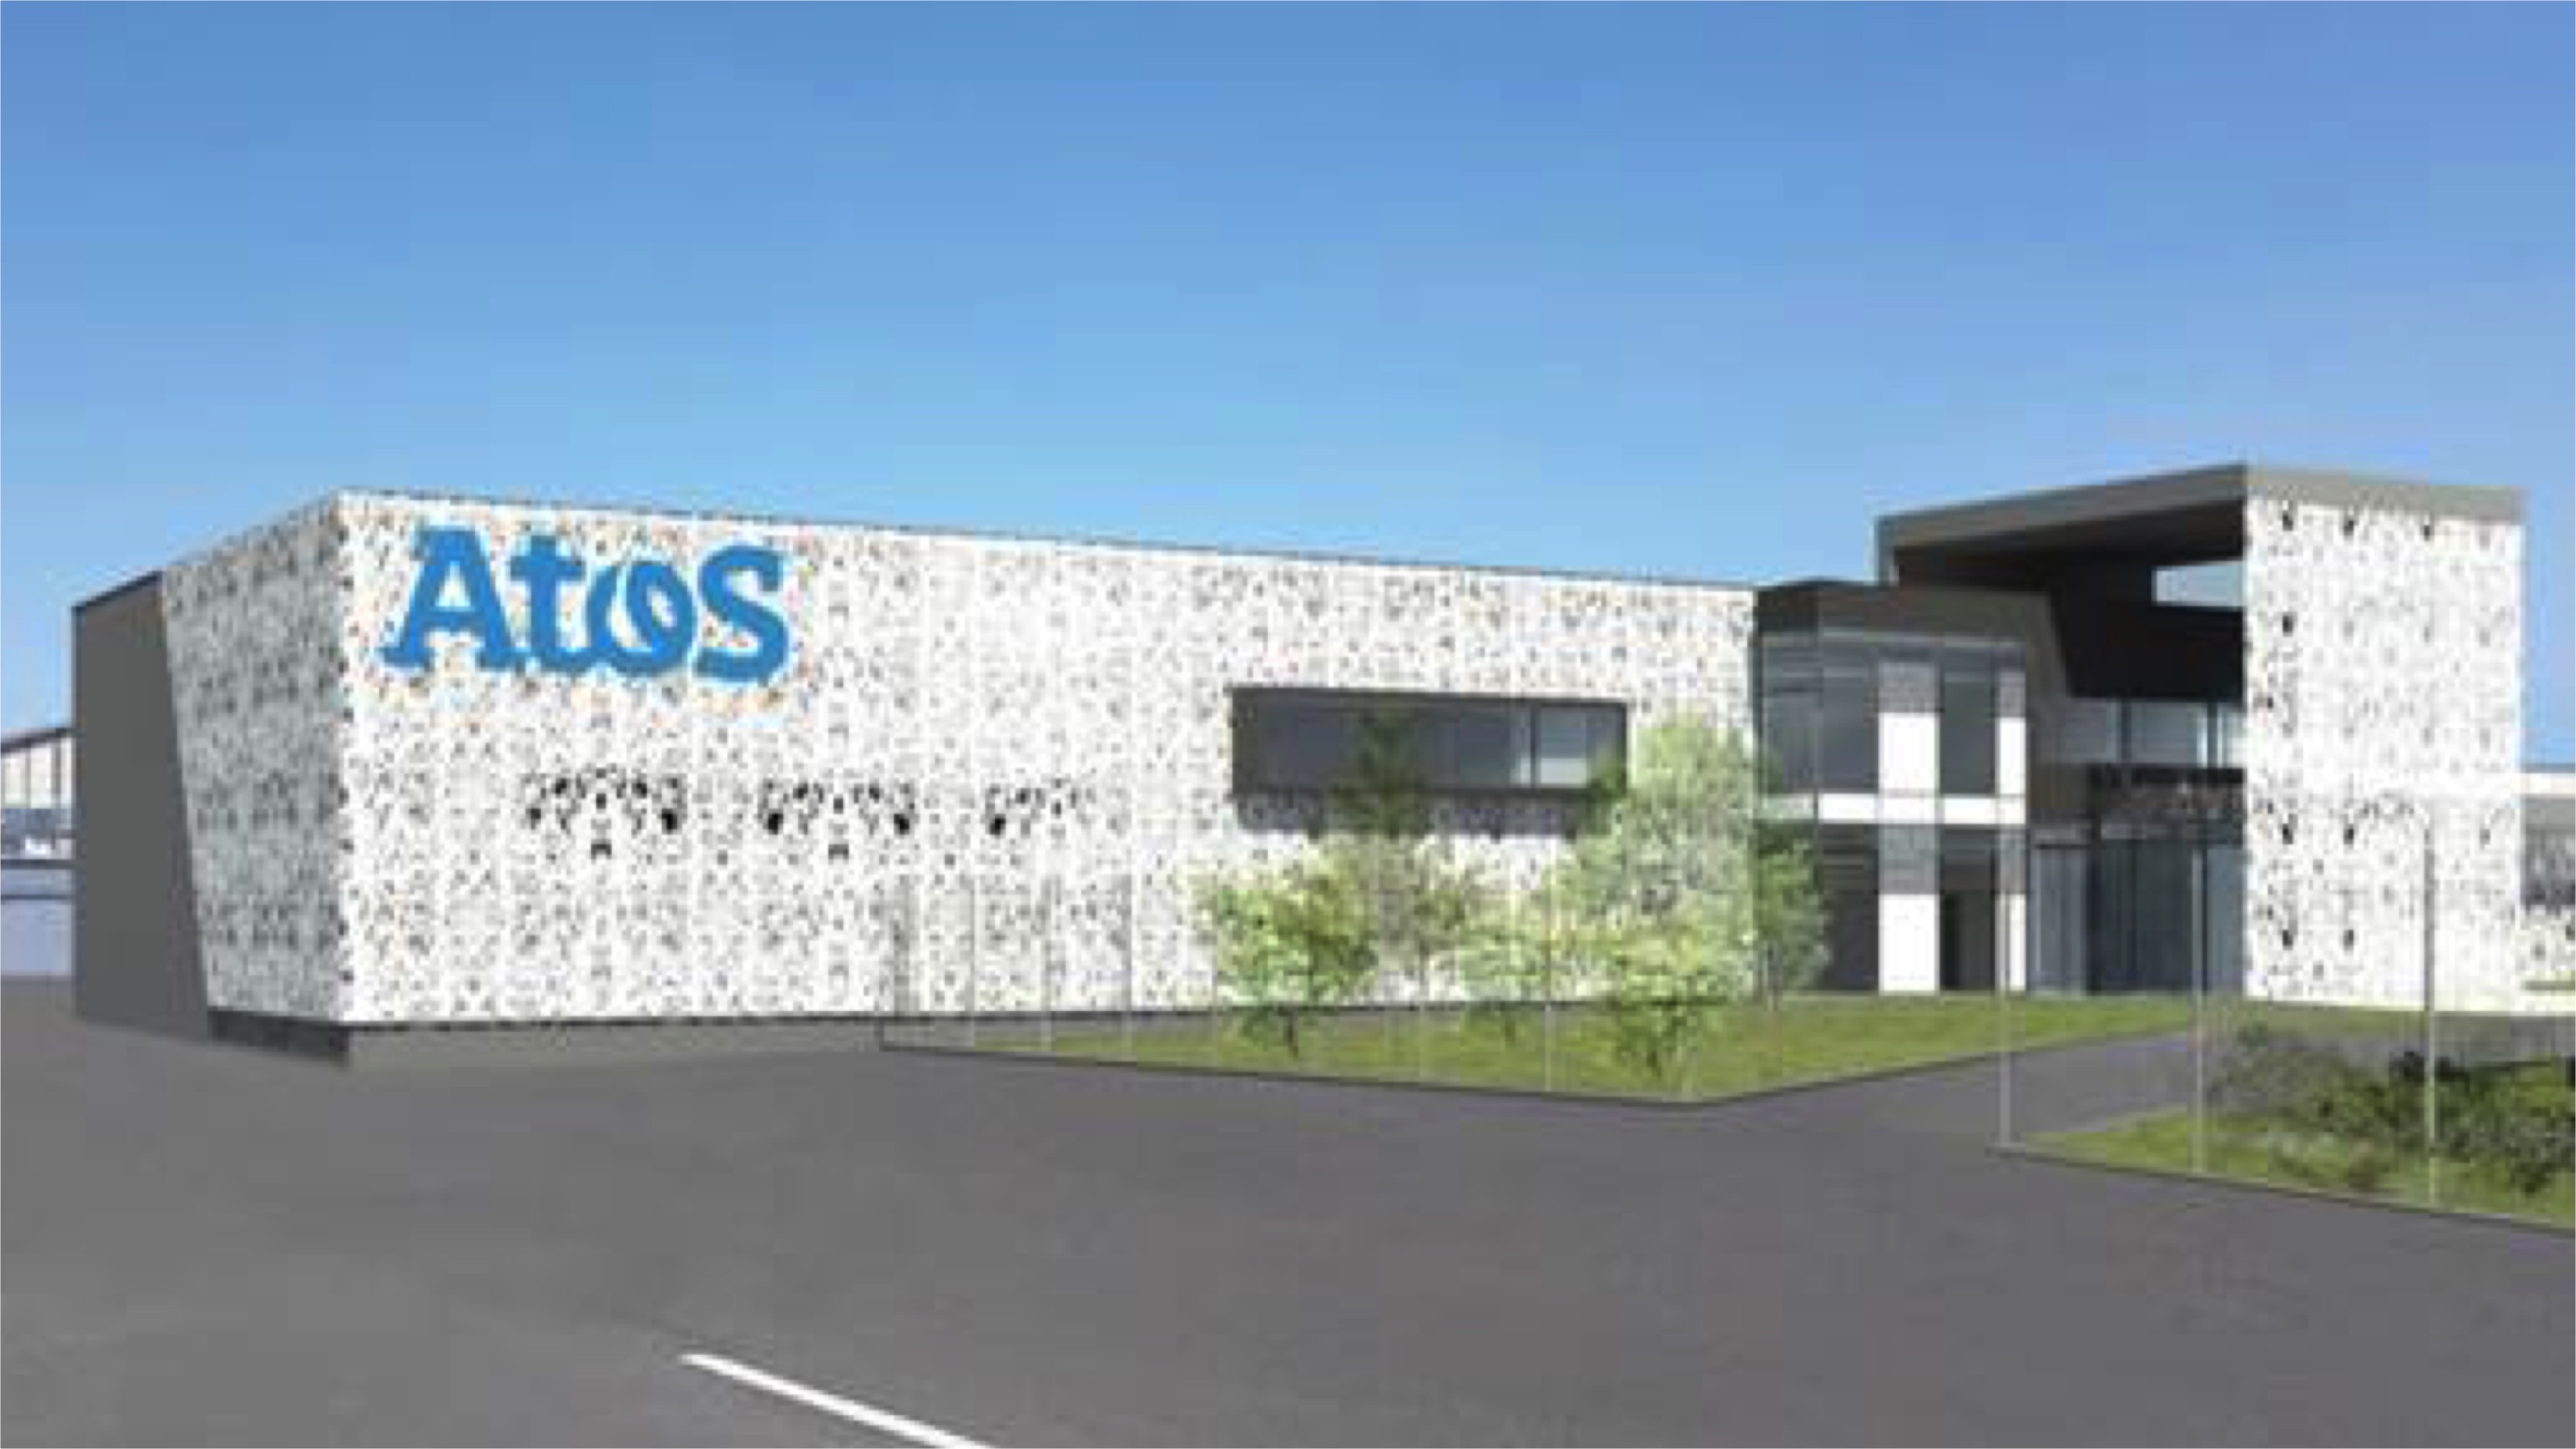  Atos lança novo projeto de 'fábrica do futuro' em Angers na França